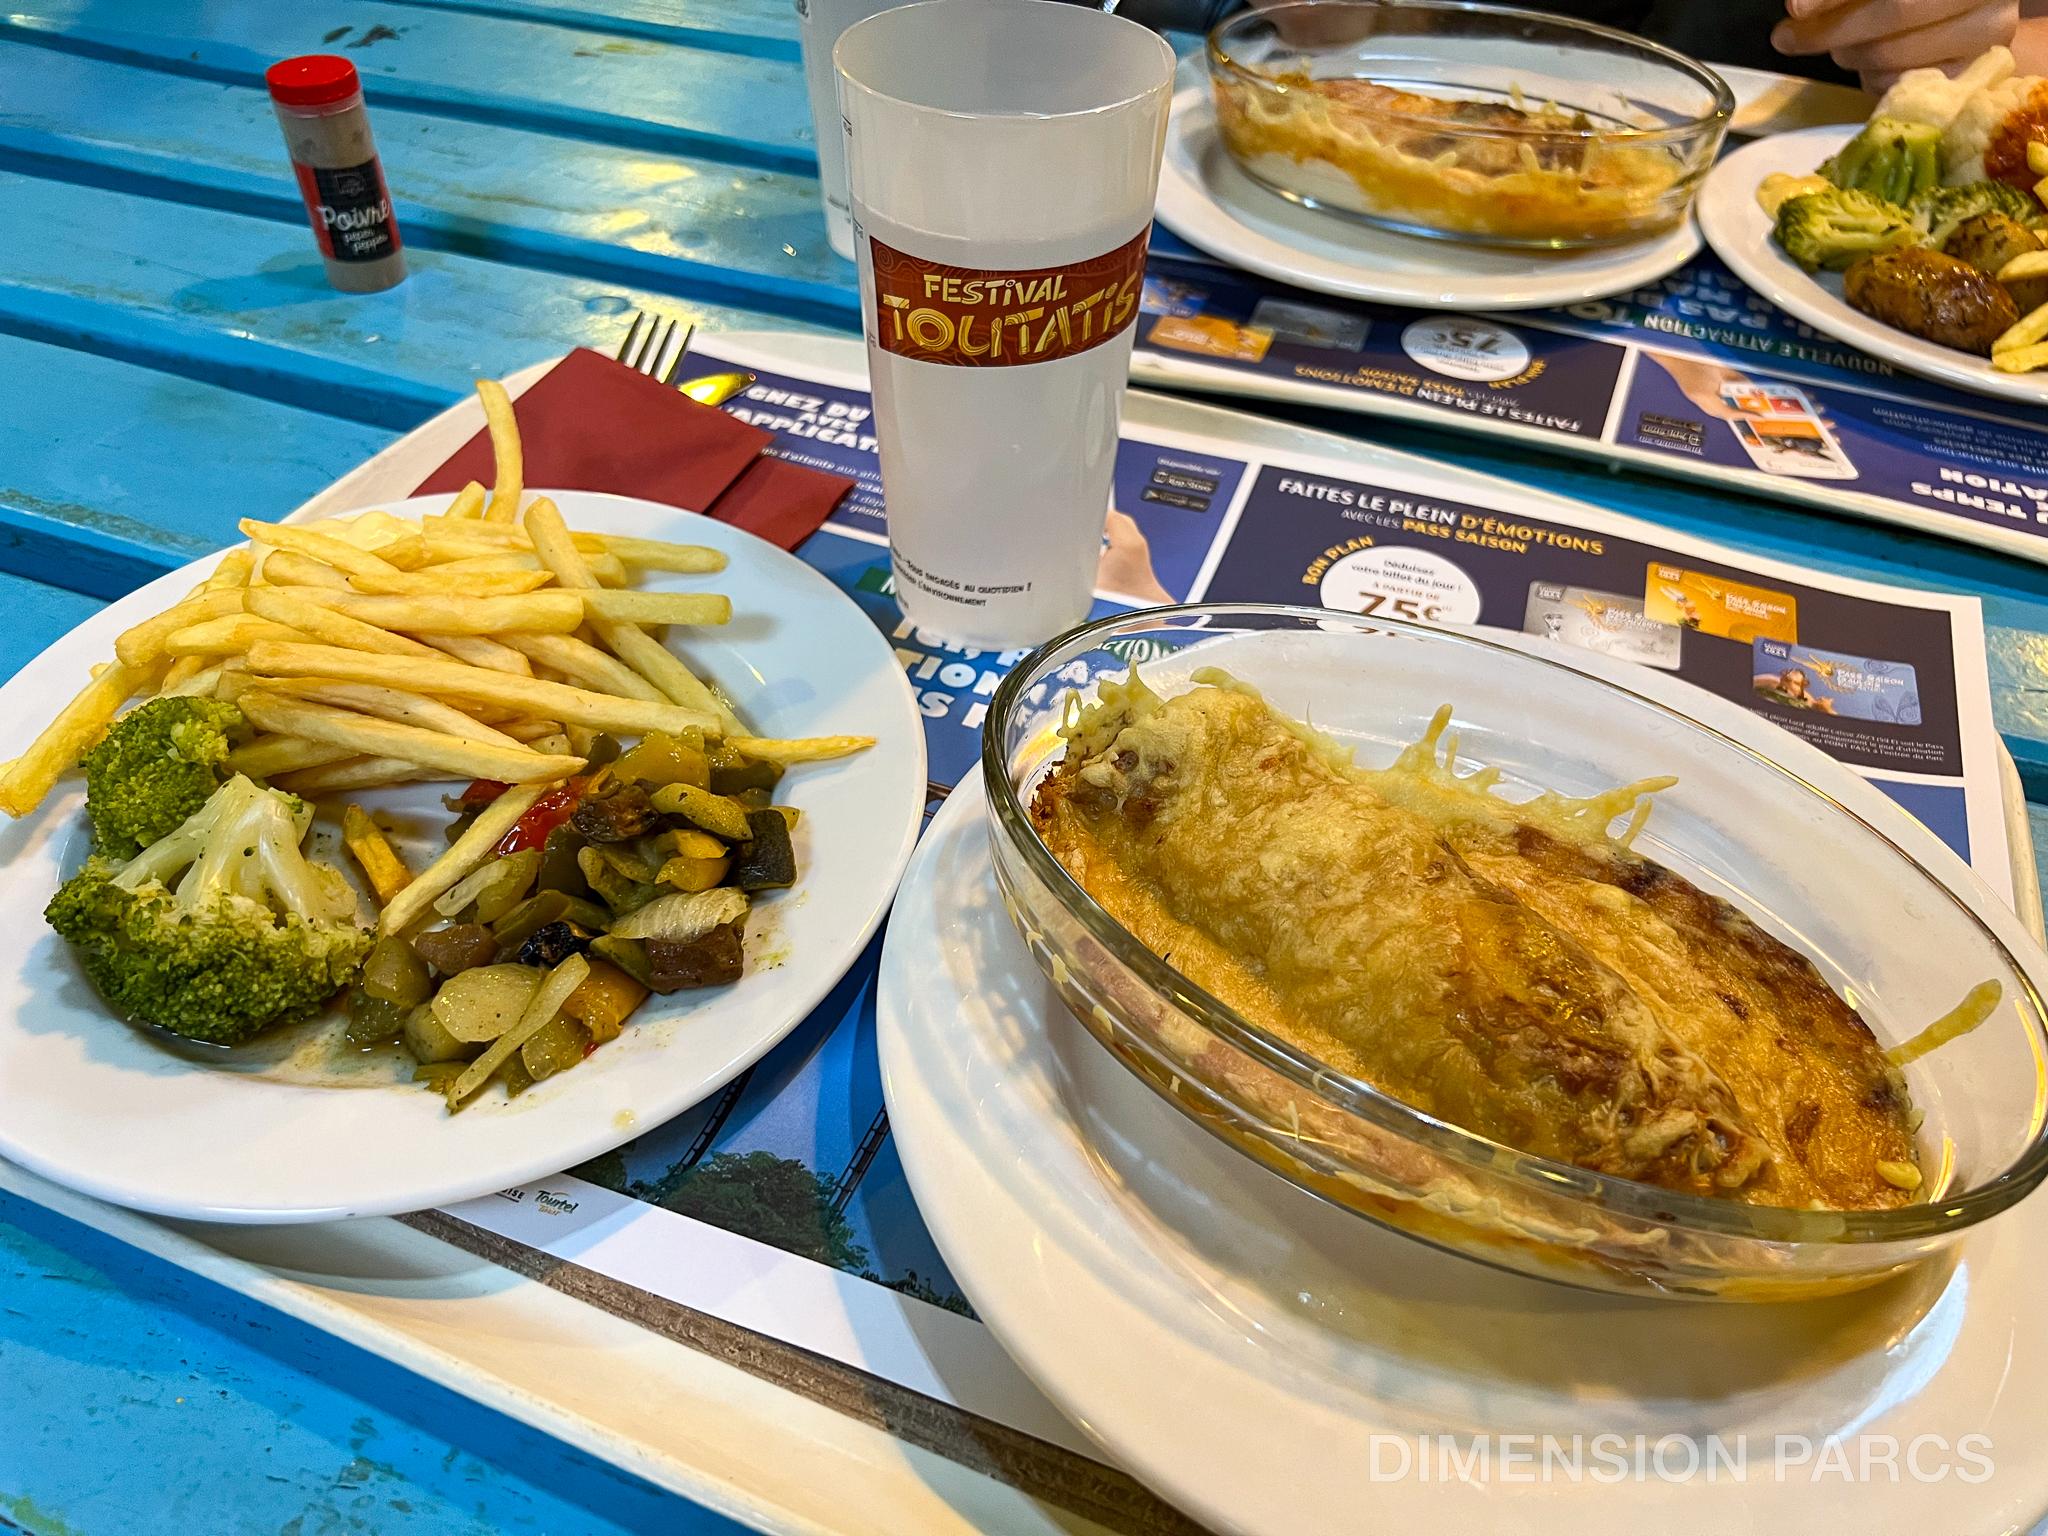 Repas au Relais Gaulois composé d'une ficelle picarde, d'une assiette de légumes, et d'un verre d'eau